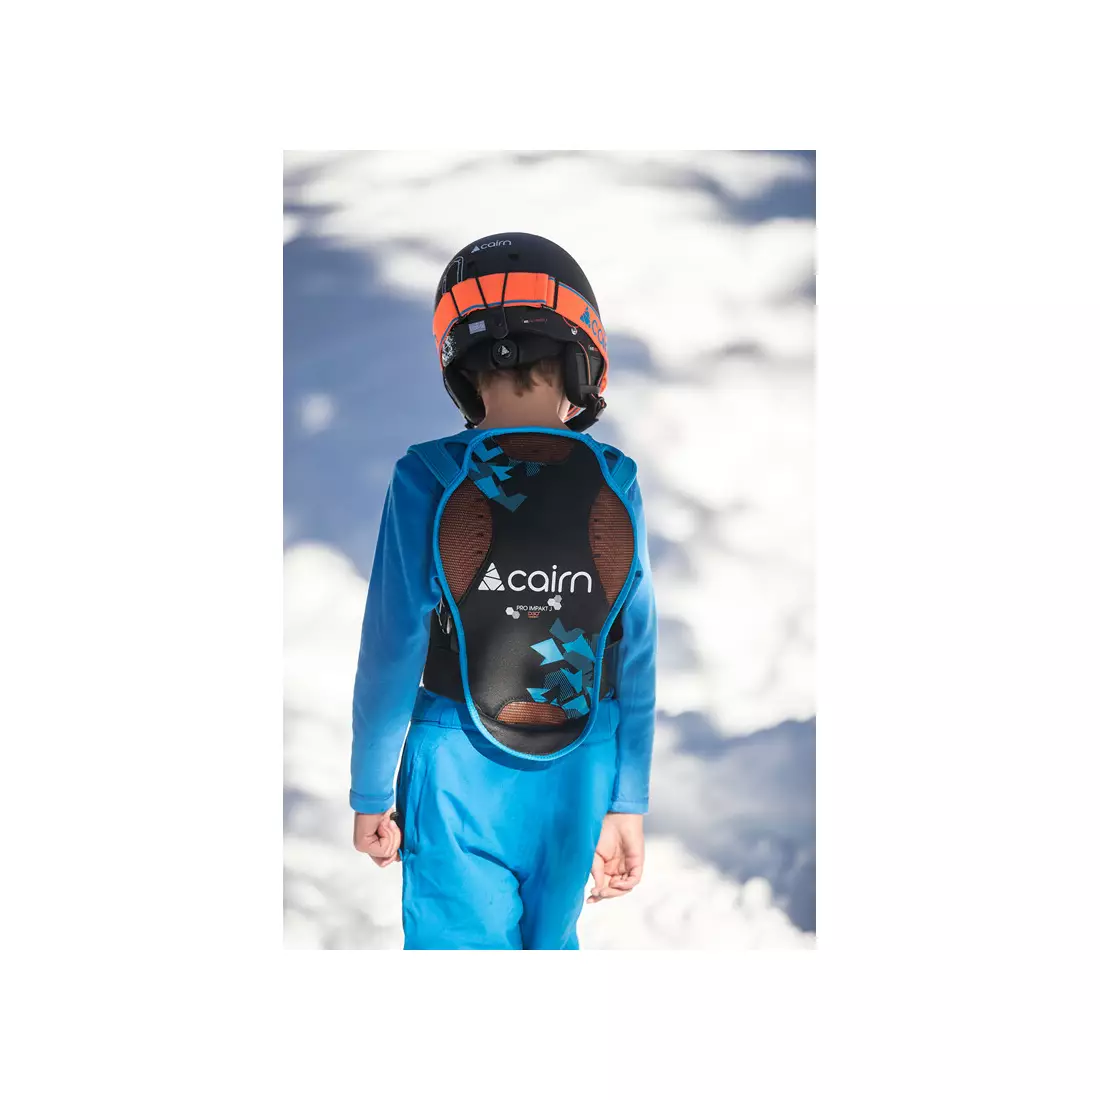 CAIRN PRO IMPAKT JR D3O dětský chránič zad na lyže / snowboard, černo-modrý